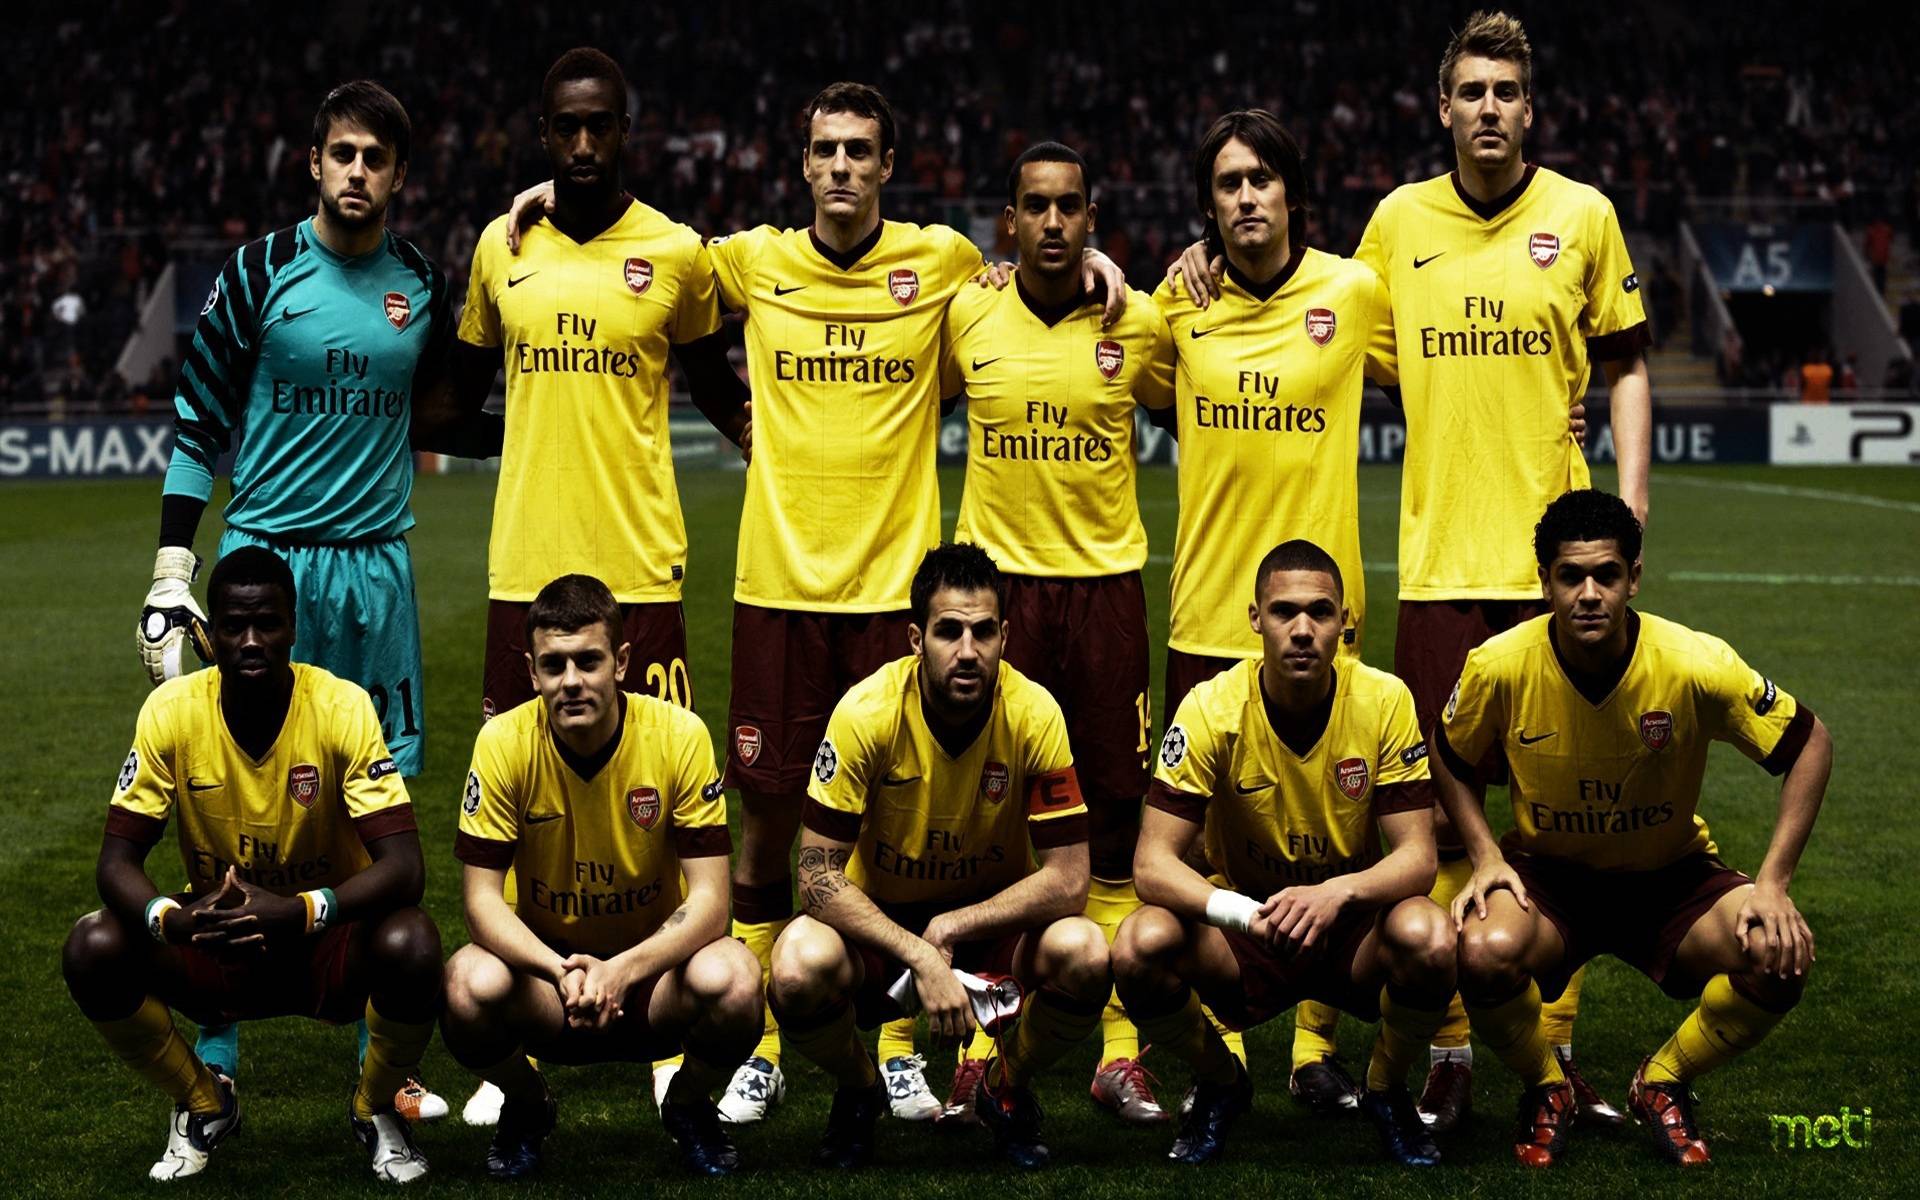 Arsenal London Soccer Team Wallpaper